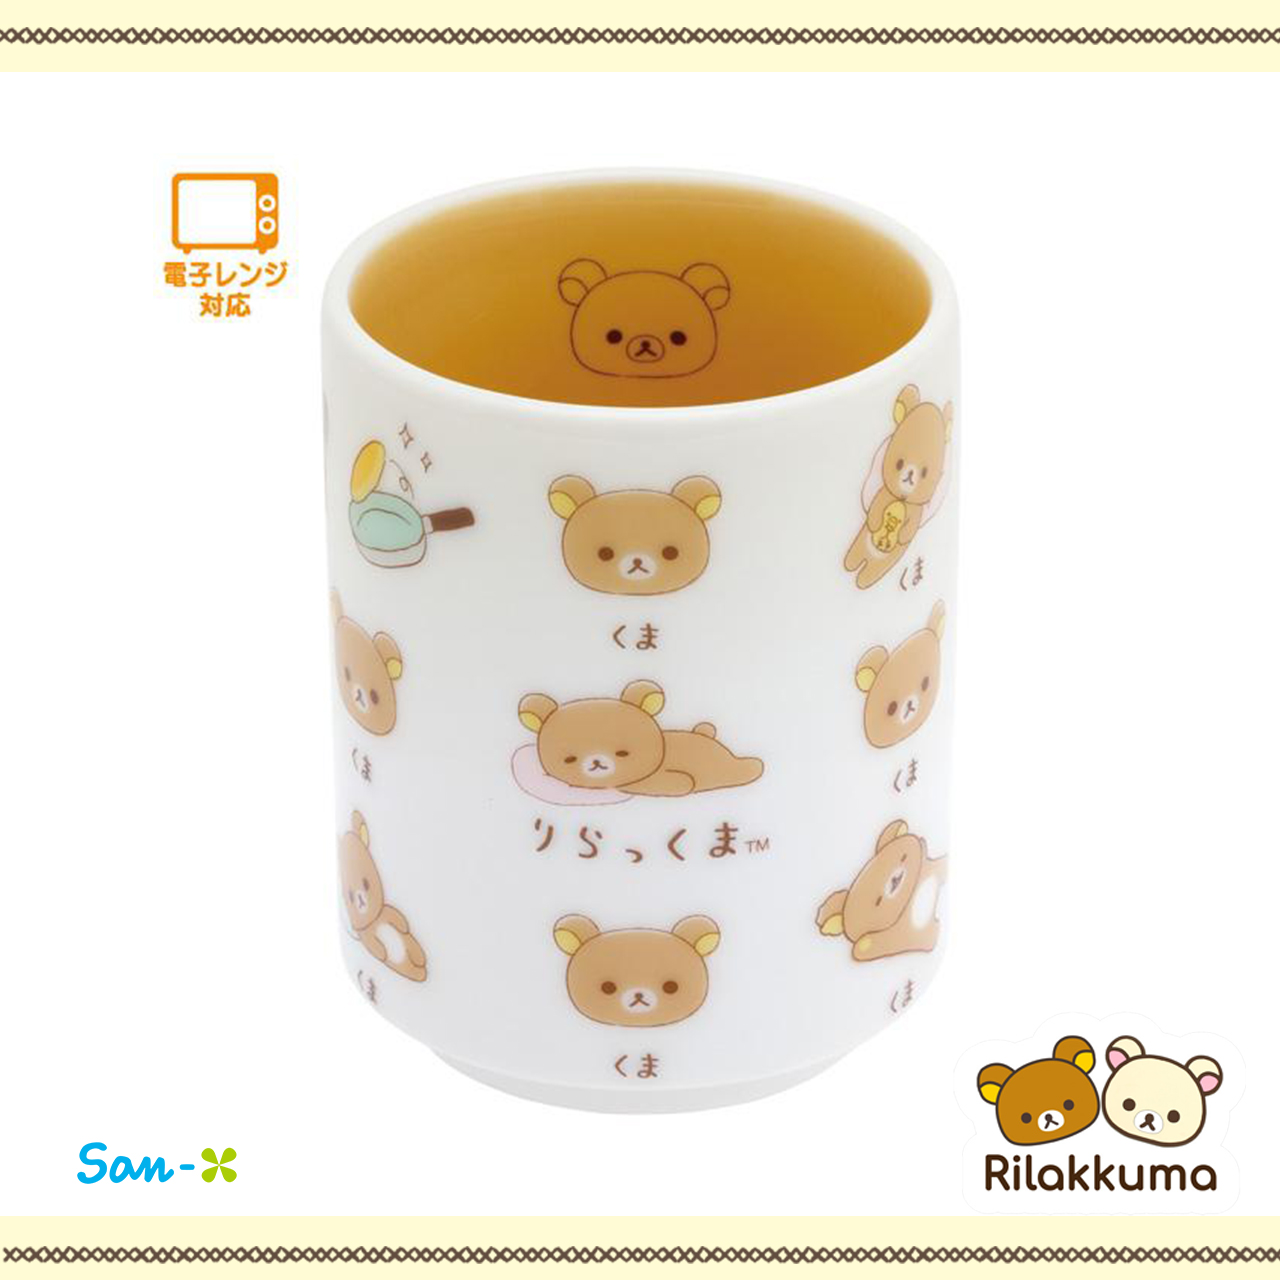 茶杯-拉拉熊 Rilakkuma san-x 日本進口正版授權